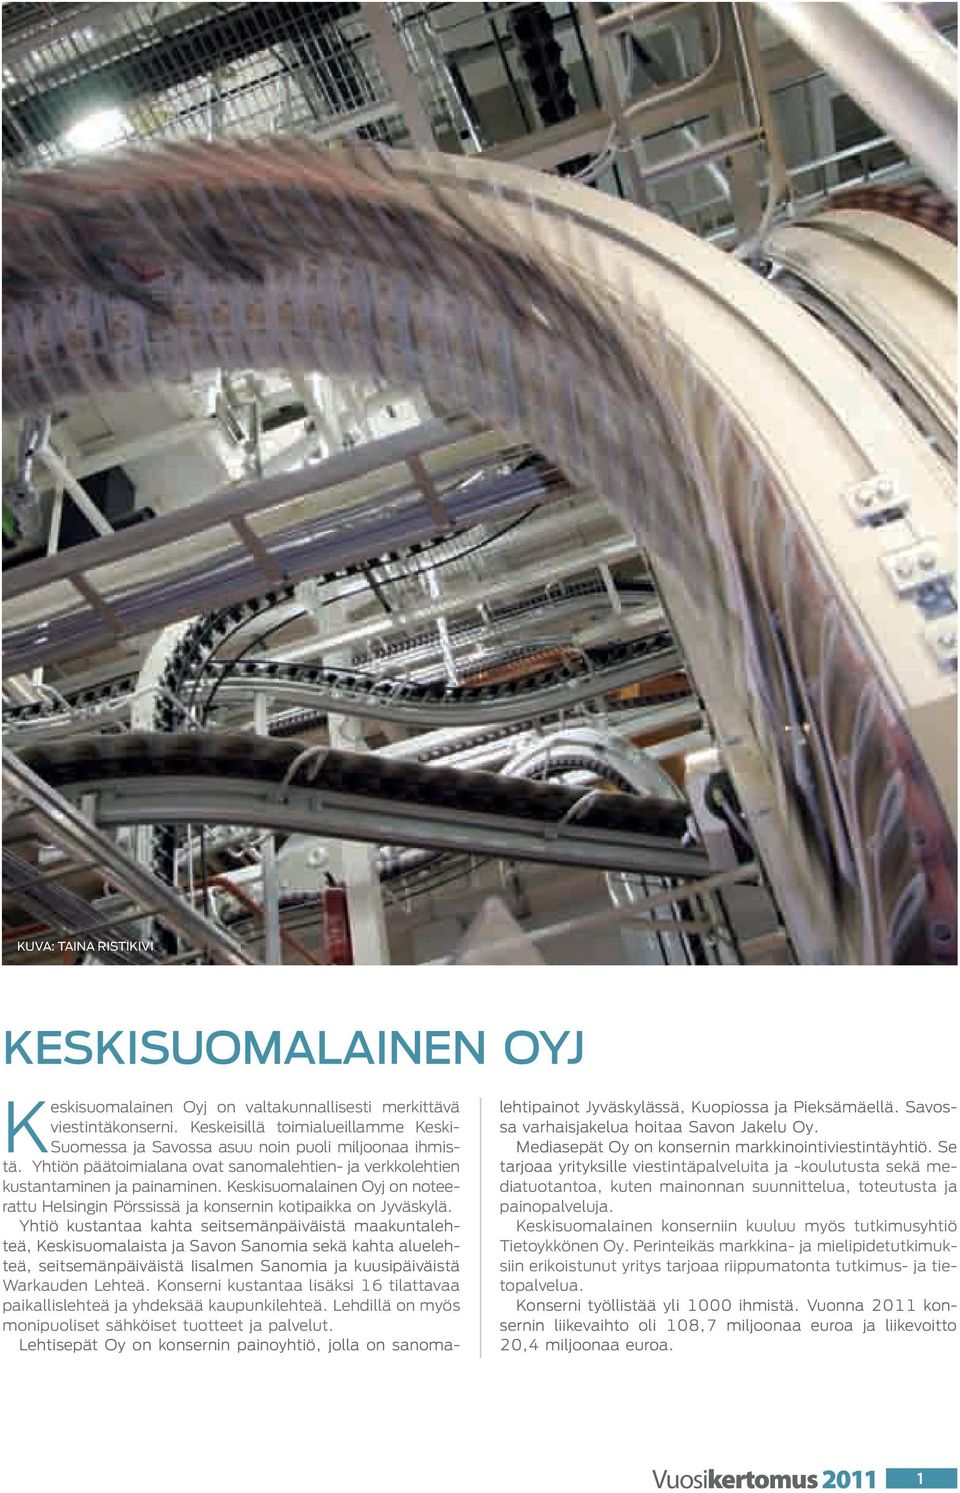 Keskisuomalainen Oyj on noteerattu Helsingin Pörssissä ja konsernin kotipaikka on Jyväskylä.